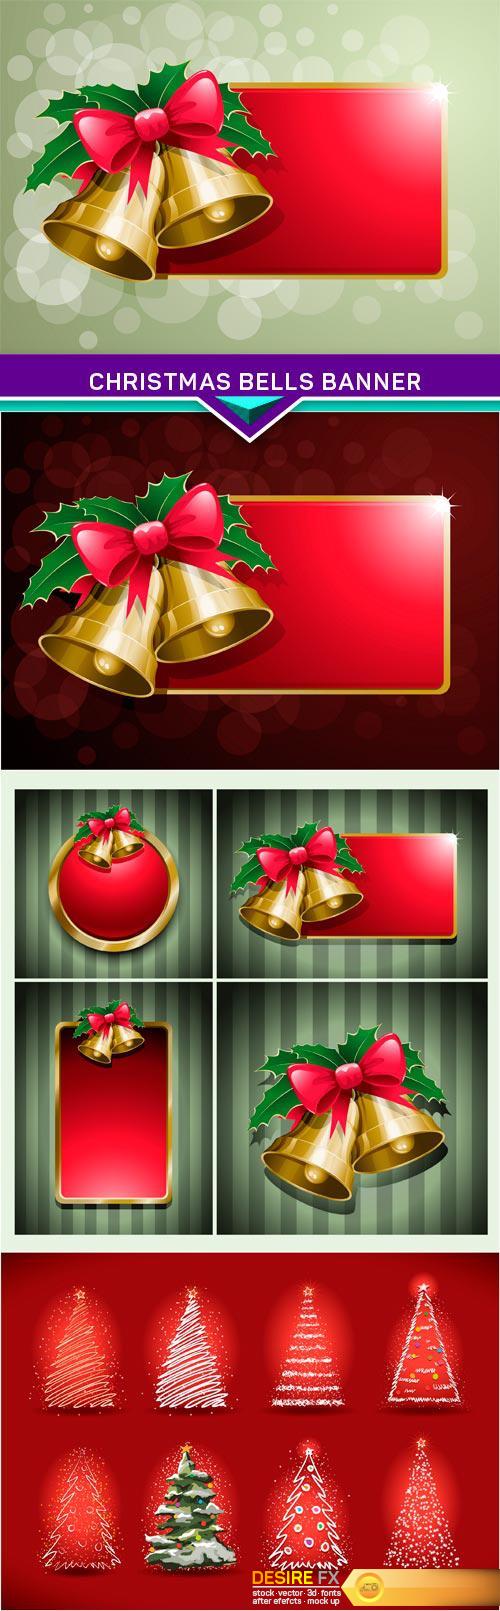 Christmas bells banner 4X JPEG